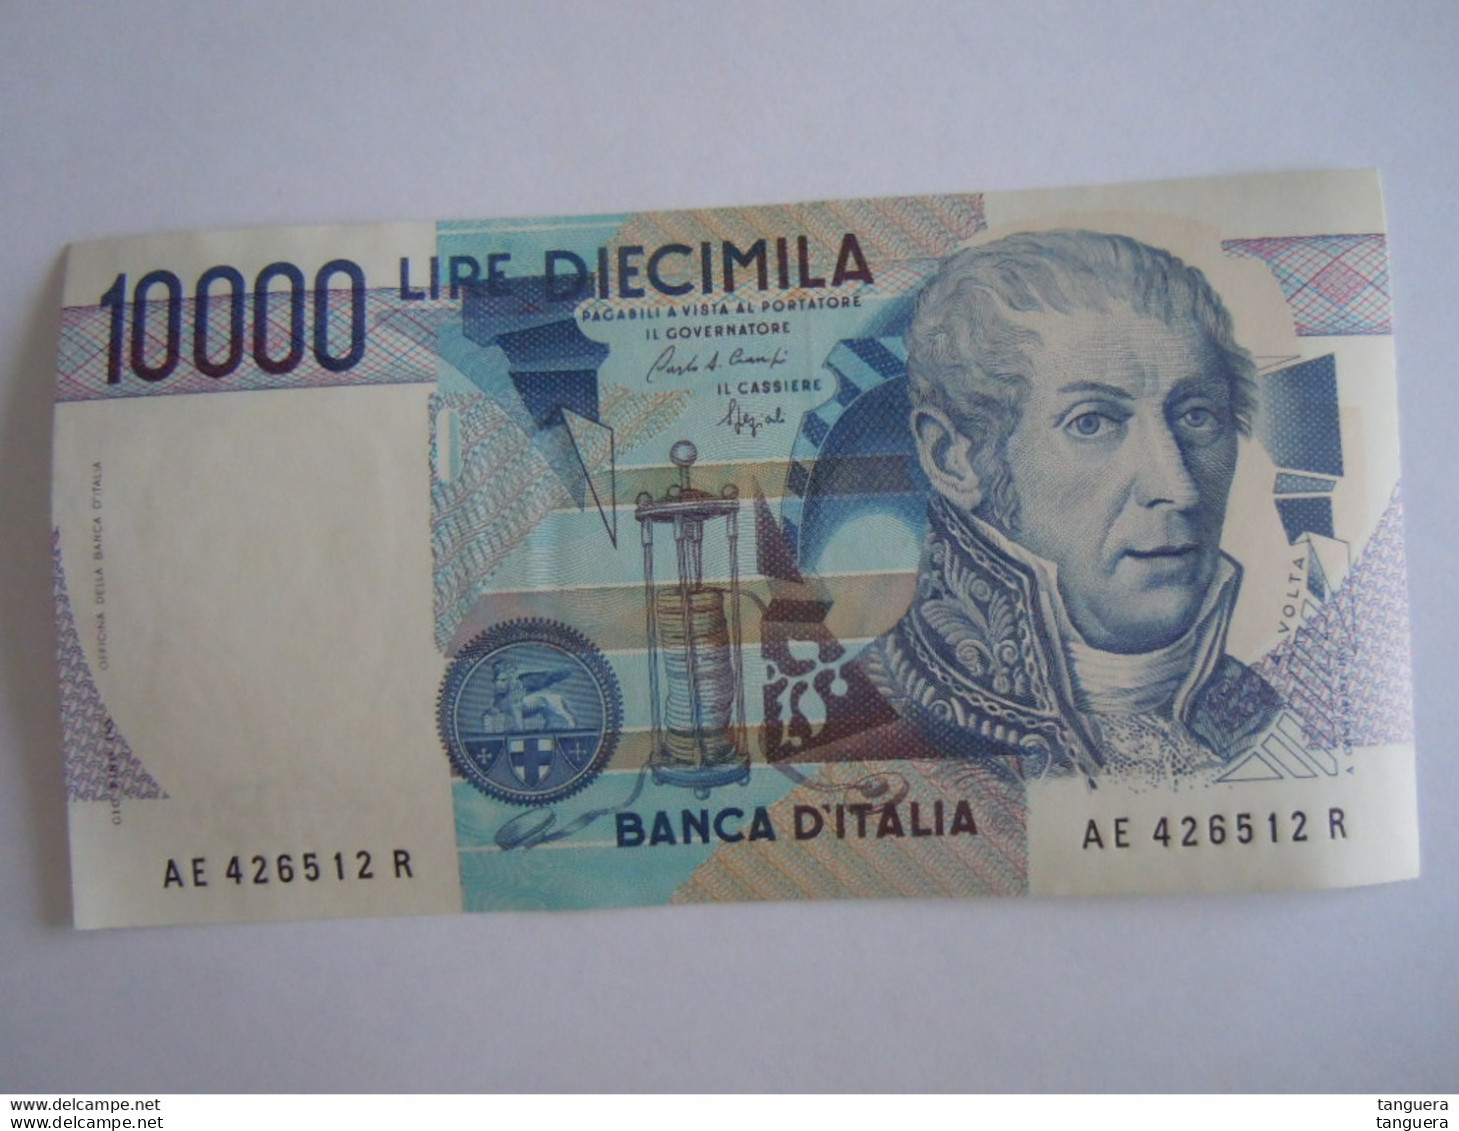 Italia Italie 10000 lire Volta 8 billets consécutivement AE 426512 R à AE 426519 R neuf